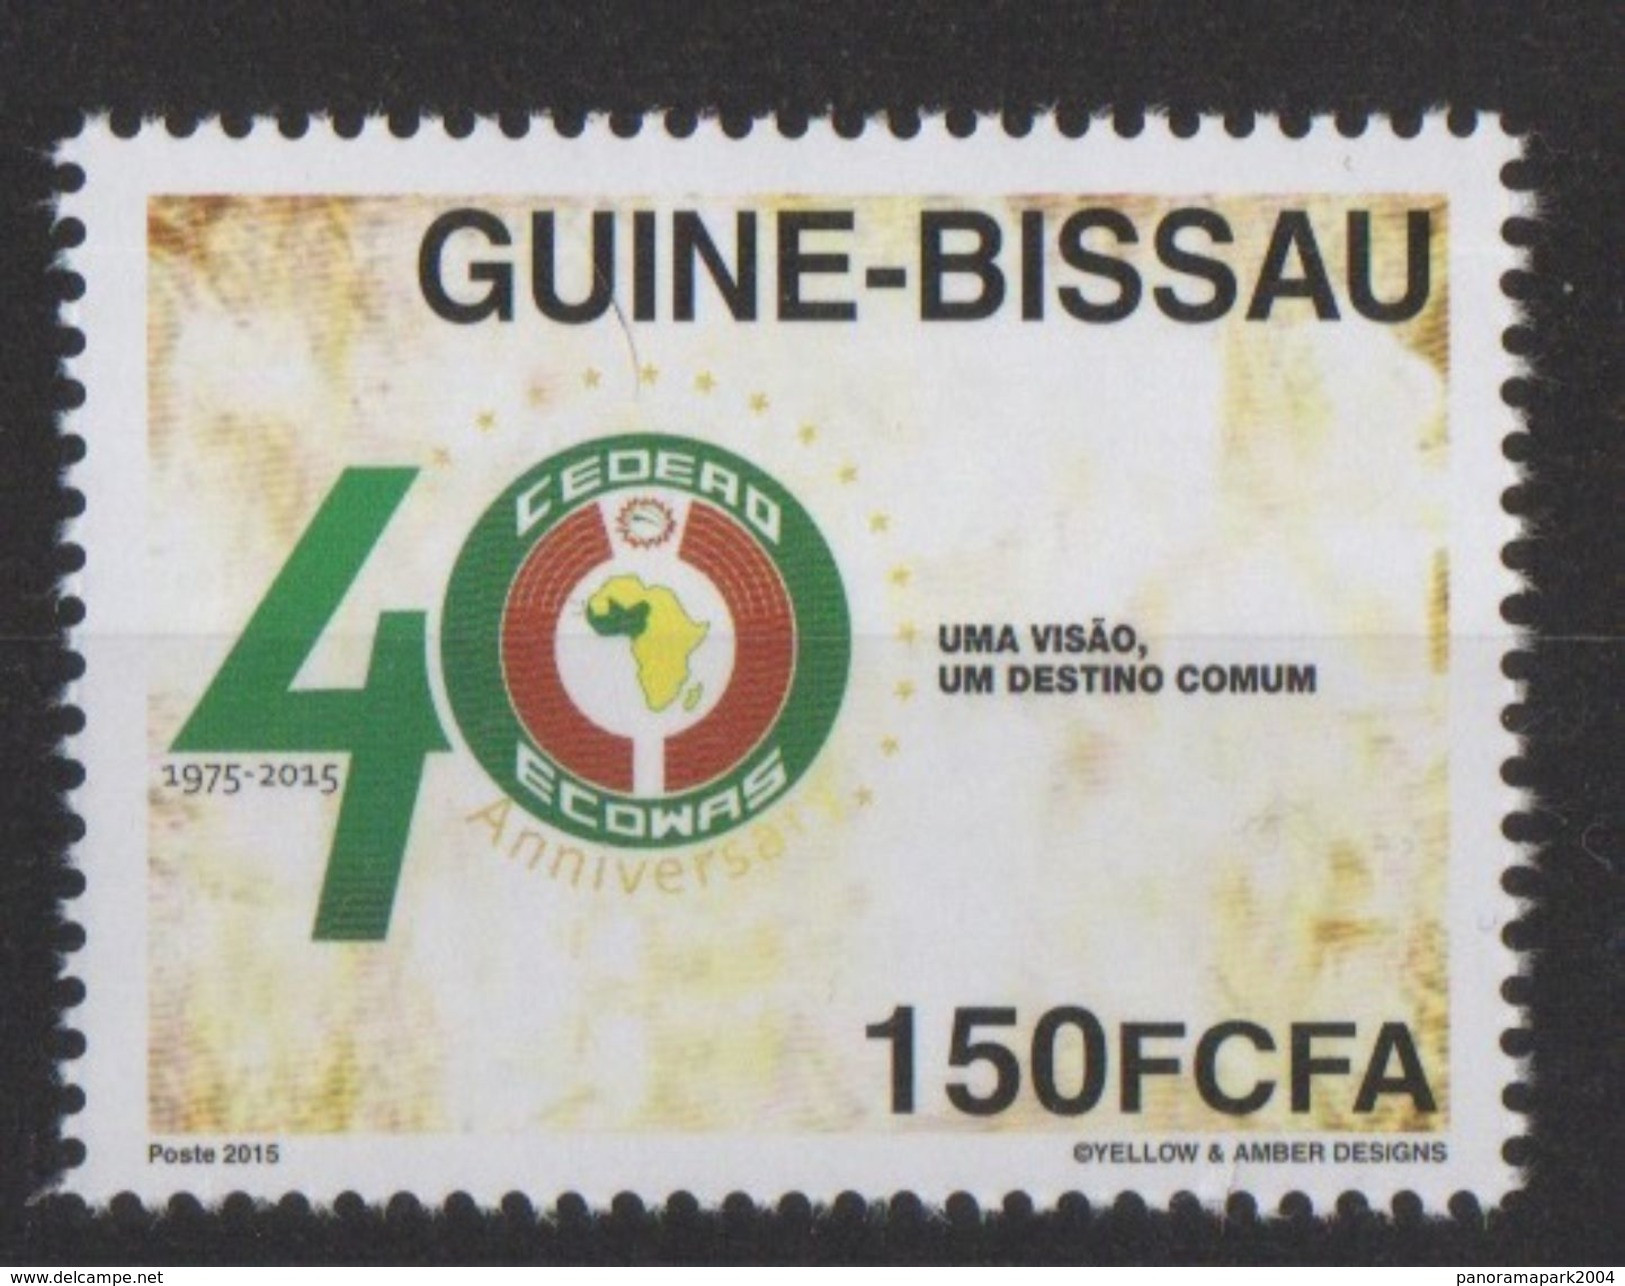 Guiné Bissau Guinea Guinée 2015 Emission Commune Joint Issue CEDEAO ECOWAS 40 Ans 40 Years - Guinée-Bissau